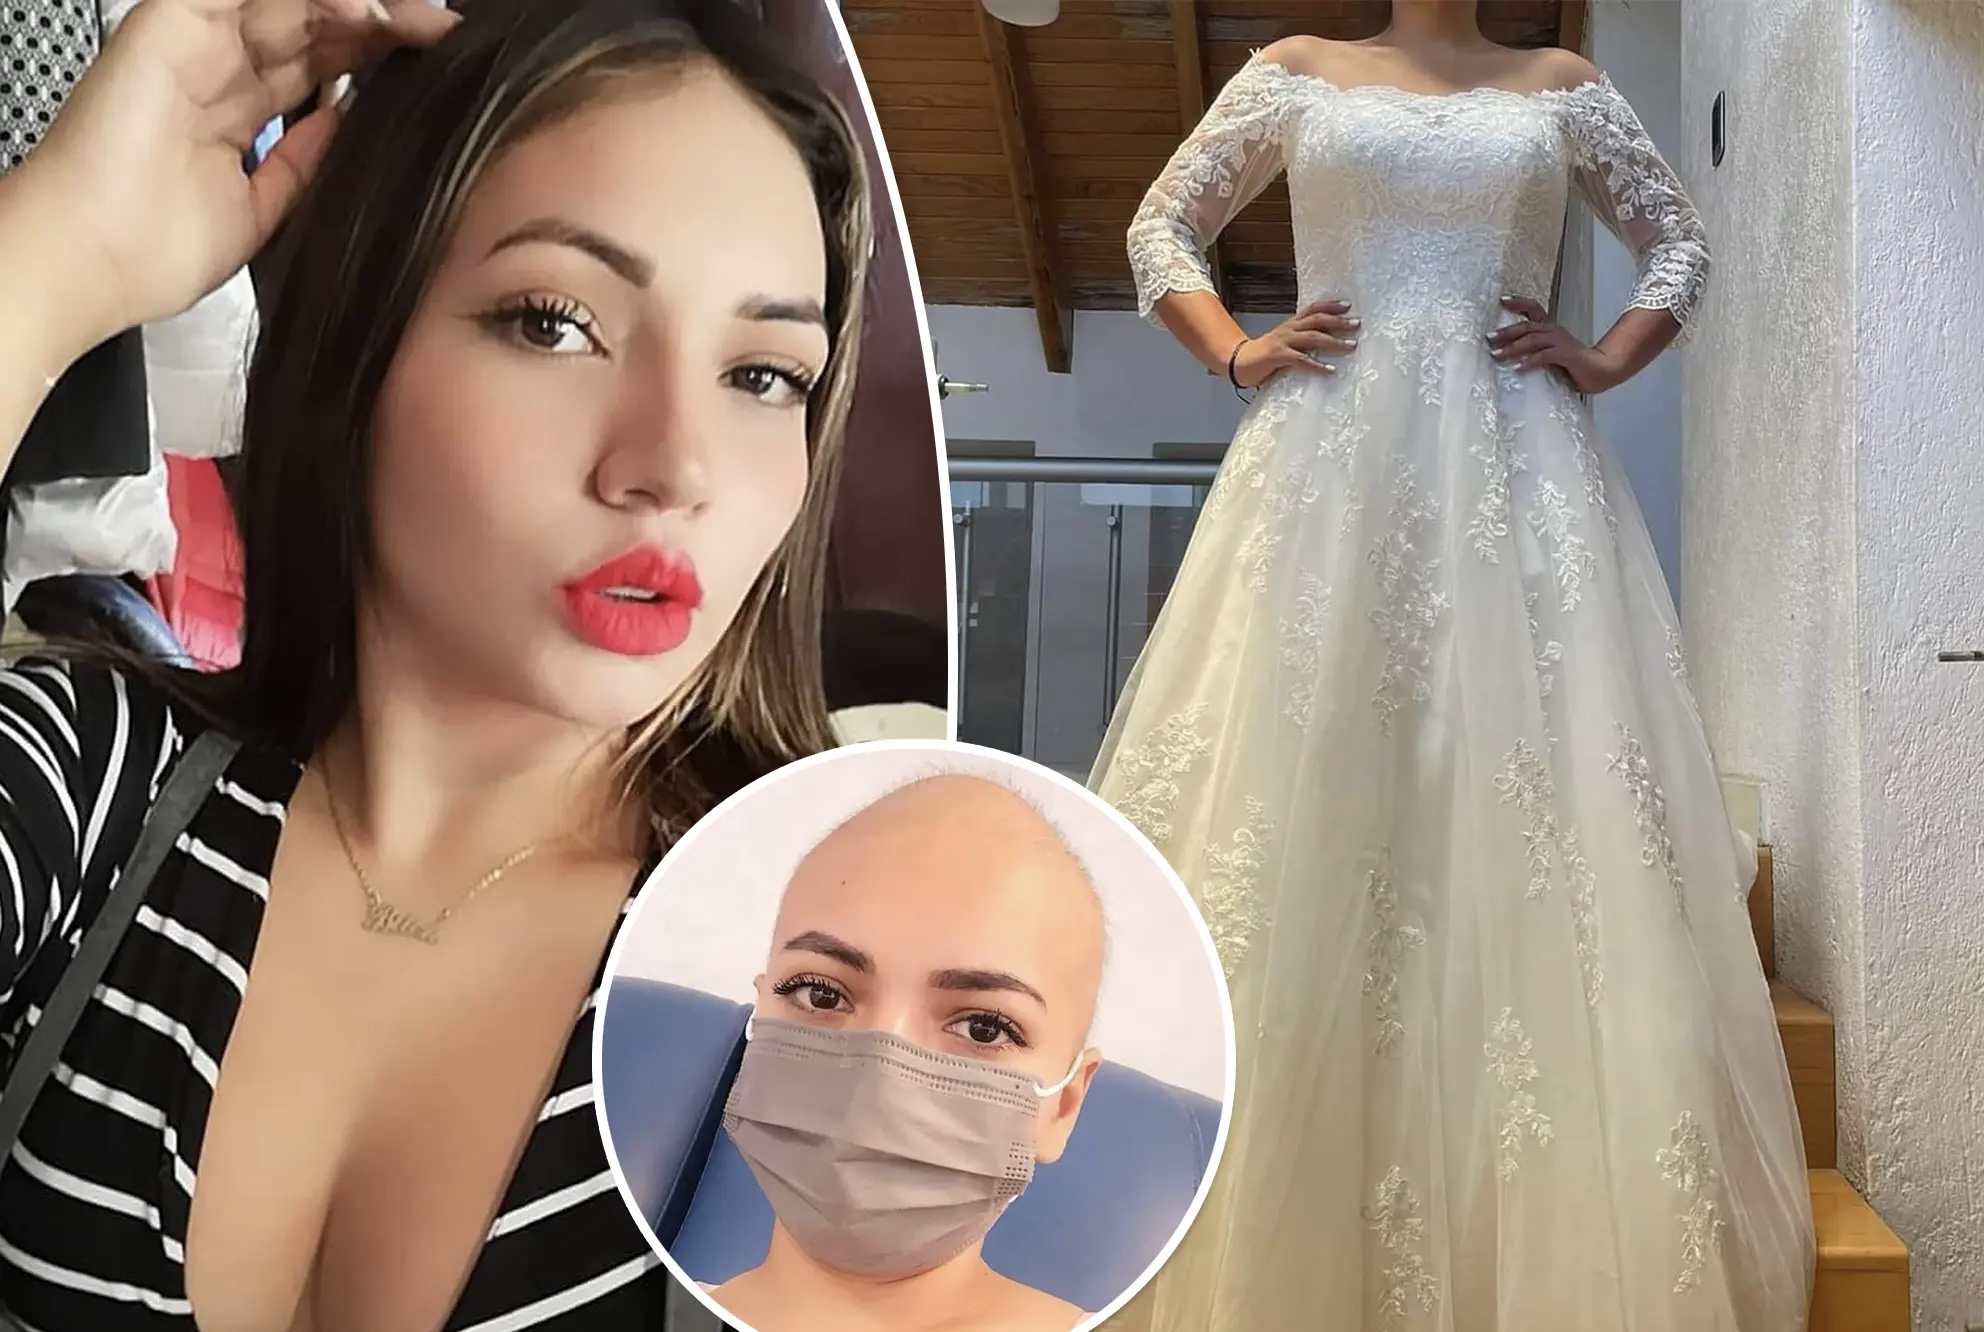 E reja nxjerr në shitje fustanin e nusërisë, i fejuari e la pasi ajo u diagnostifikua me kancer